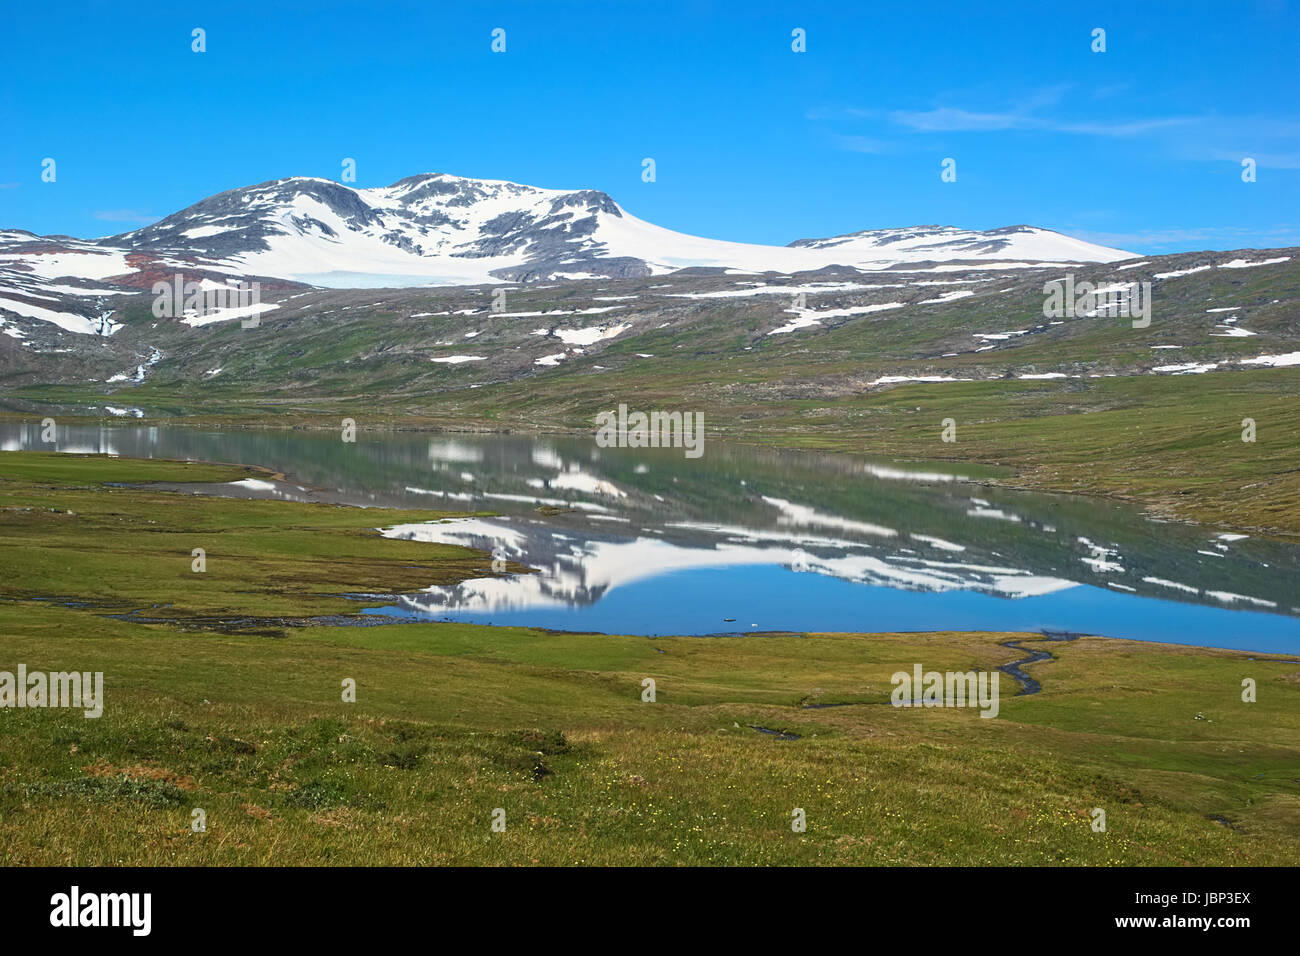 Estate fjell paesaggio nel nord della Norvegia: montagne brulle coperte di neve si riflette in un piccolo lago circondato da erba-campi coperti Foto Stock